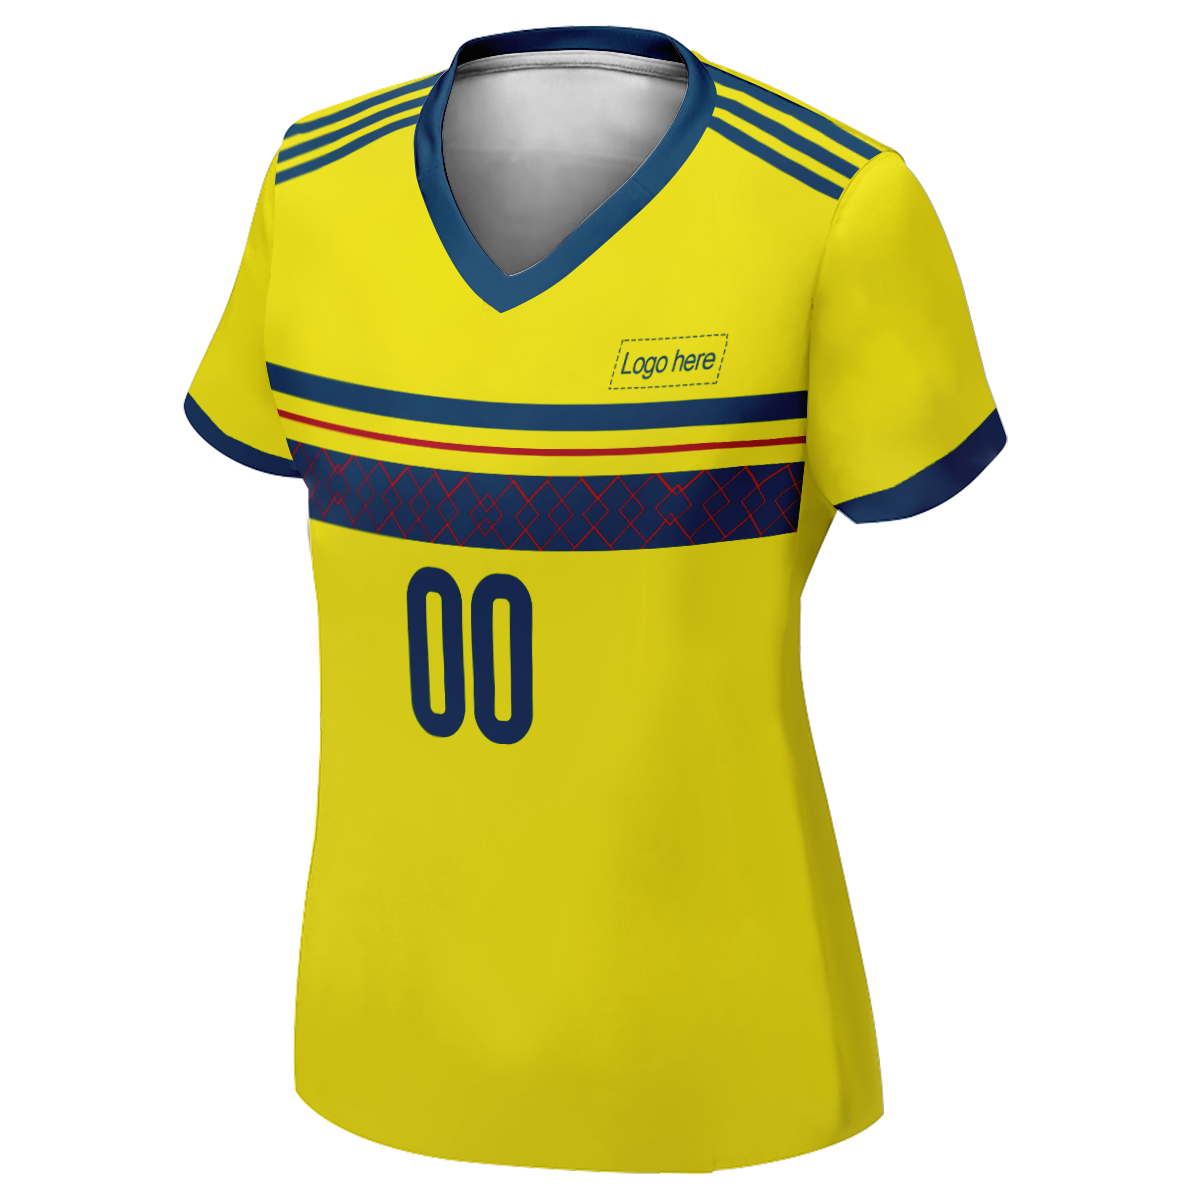 Maillot de football personnalisé de la Coupe du monde de Suède cousu pour femme avec nom